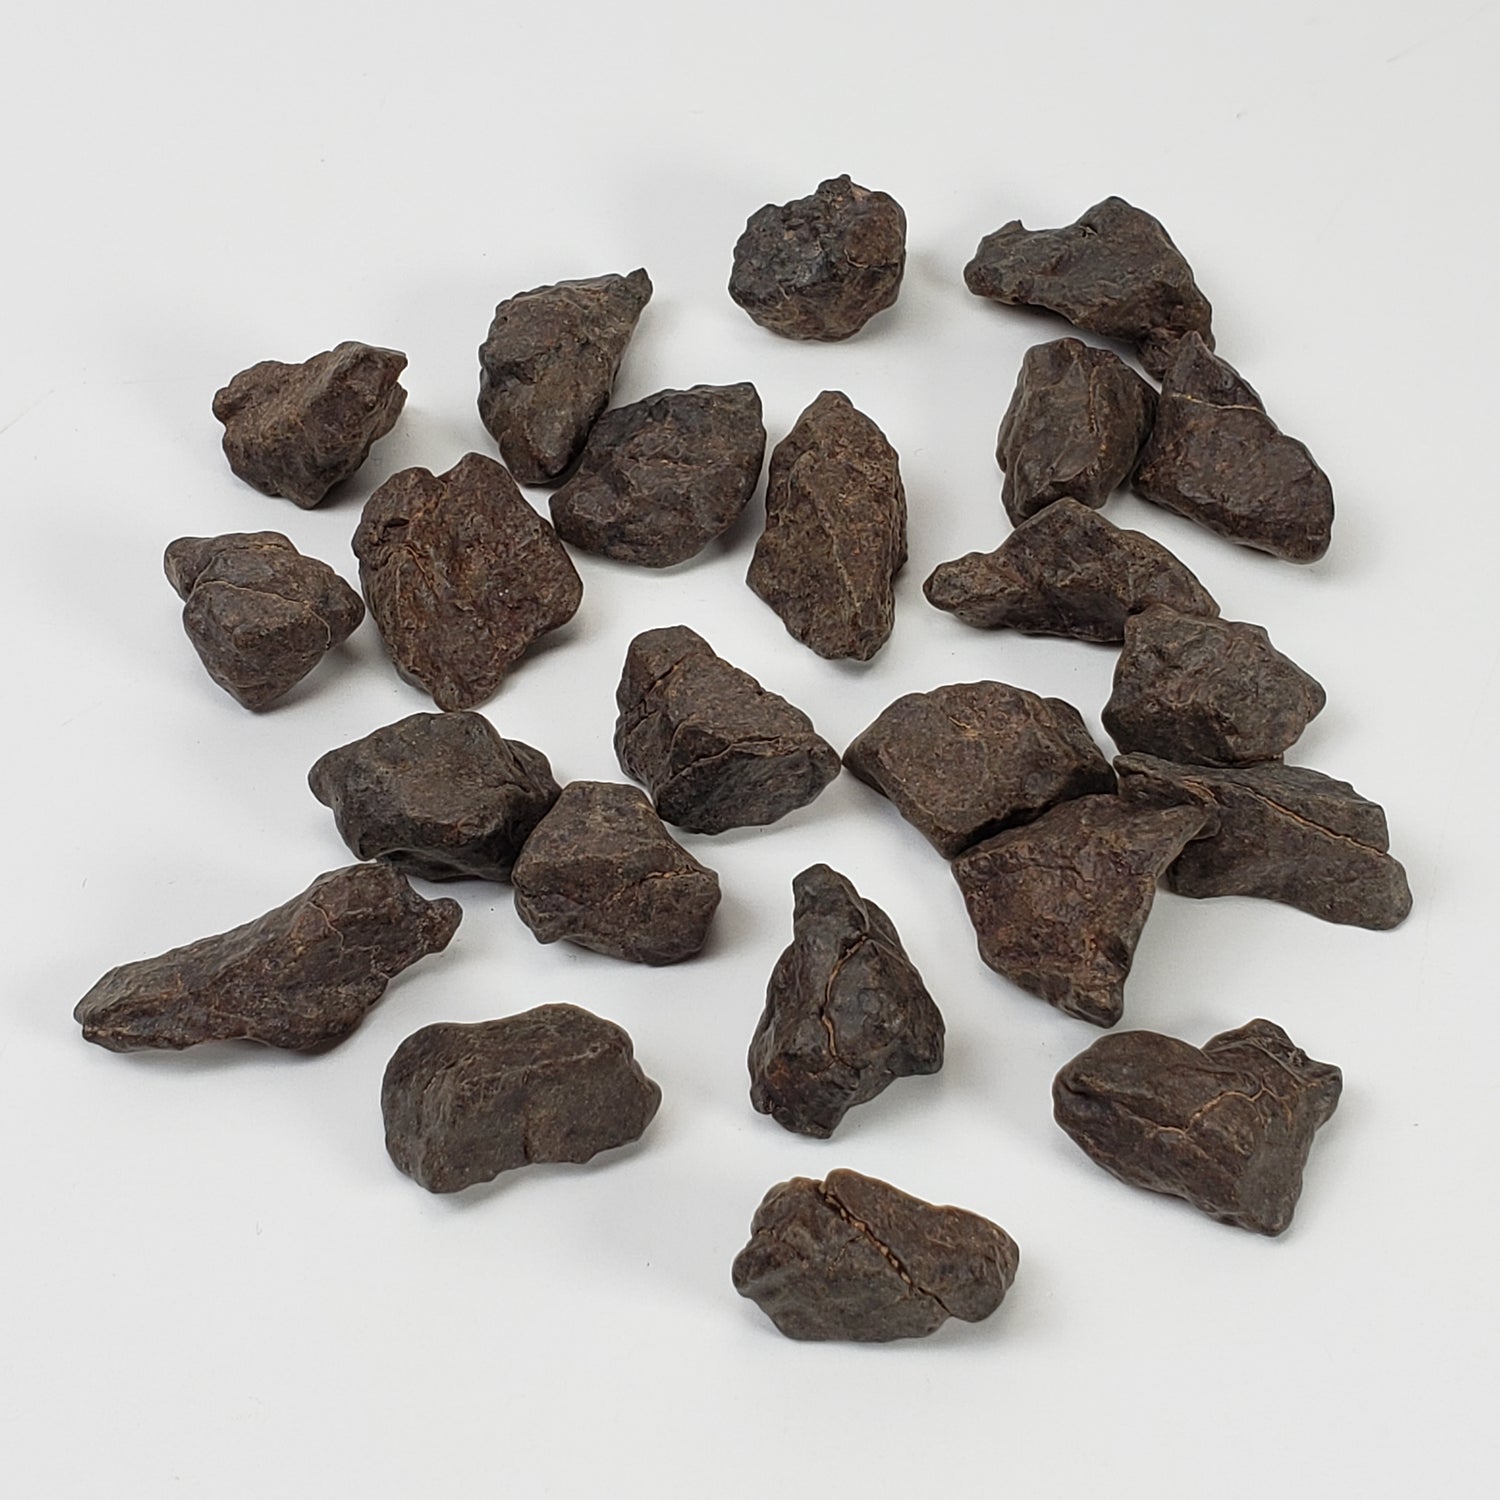 NWA 4293 Meteorite | 100 gram Lot | Individual | H6 Chondrite